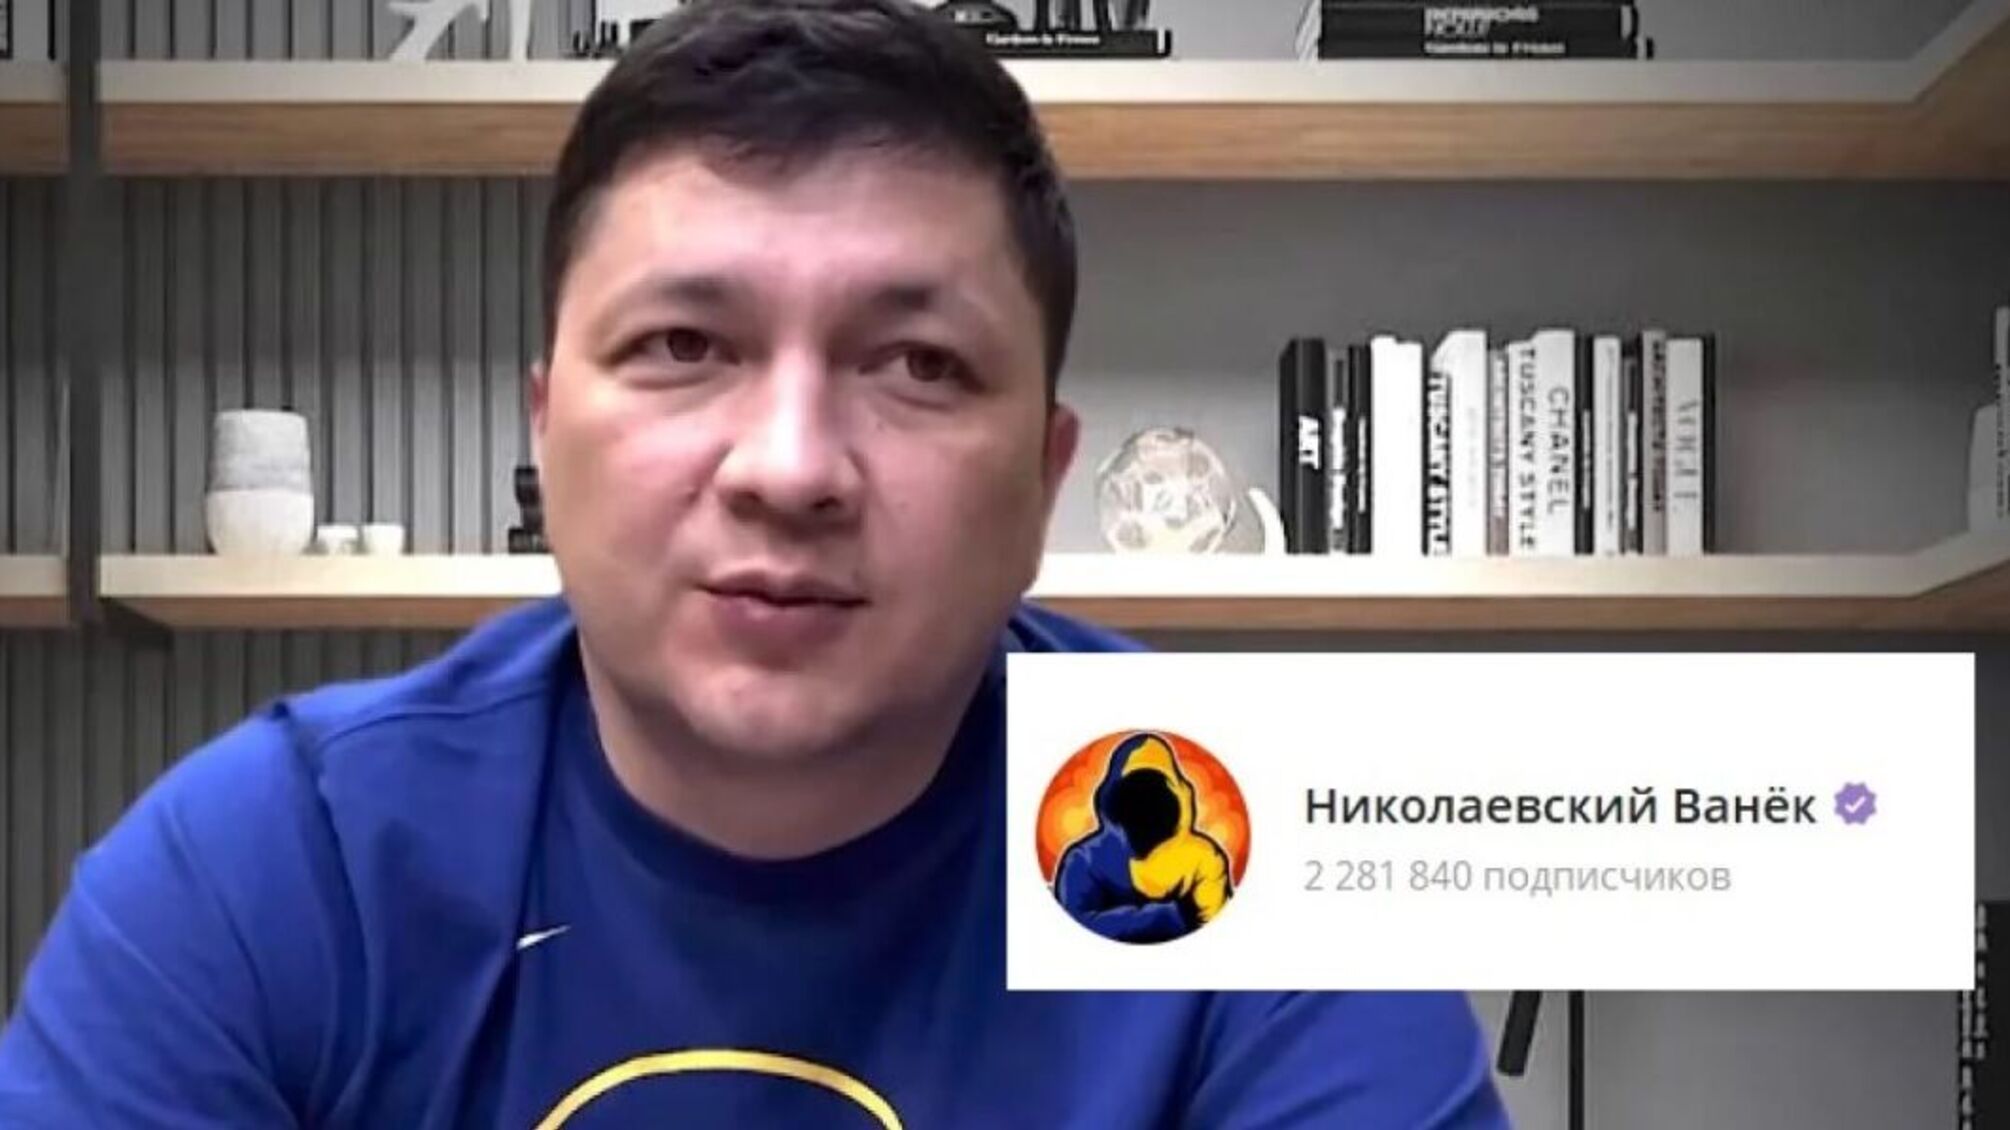 Віталій Кім співпрацює з адміністратором популярного Telegram-каналу 'Миколаївський Ваньок'